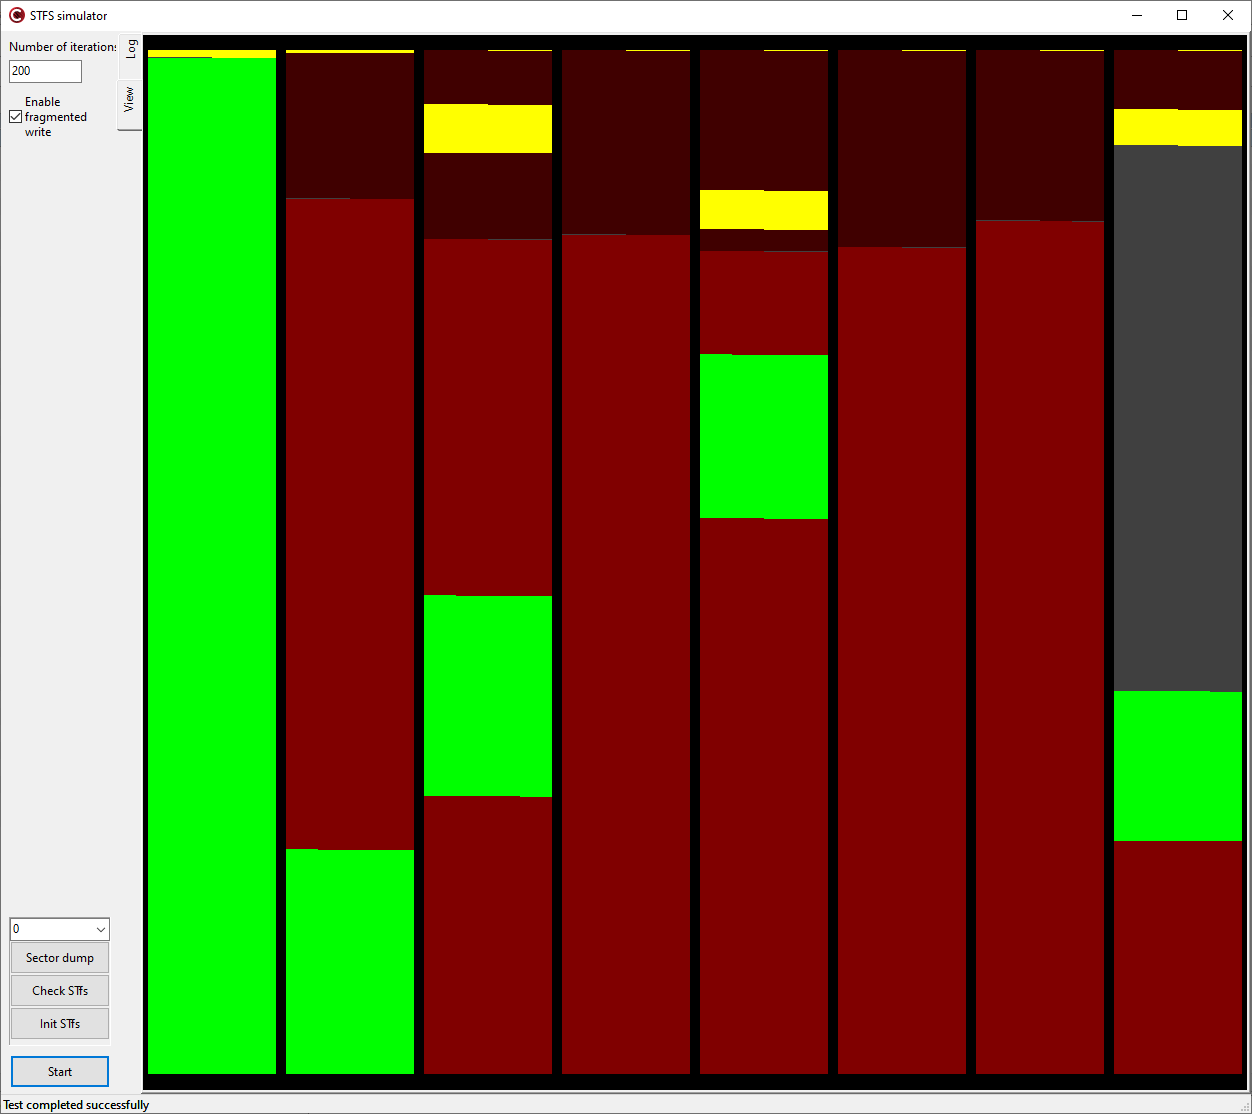 Внешний вид программы симулятора STfsКаждый пиксел в столбце отображает состояние байта в секторе. Каждый столбец это отдельный сектор. Адреса растут слева направо и снизу вверх.Зелёным цветом обозначаются блоки данных актуальных файлов, желтым обозначаются дескрипторы актуальных файлов. Красным и тёмно-красным обозначаются блоки уделенных файлов и их дескрипторов.Серый цвет обозначает чистые области Flash, куда еще ничего не записывалось после последнего стирания сектора.  